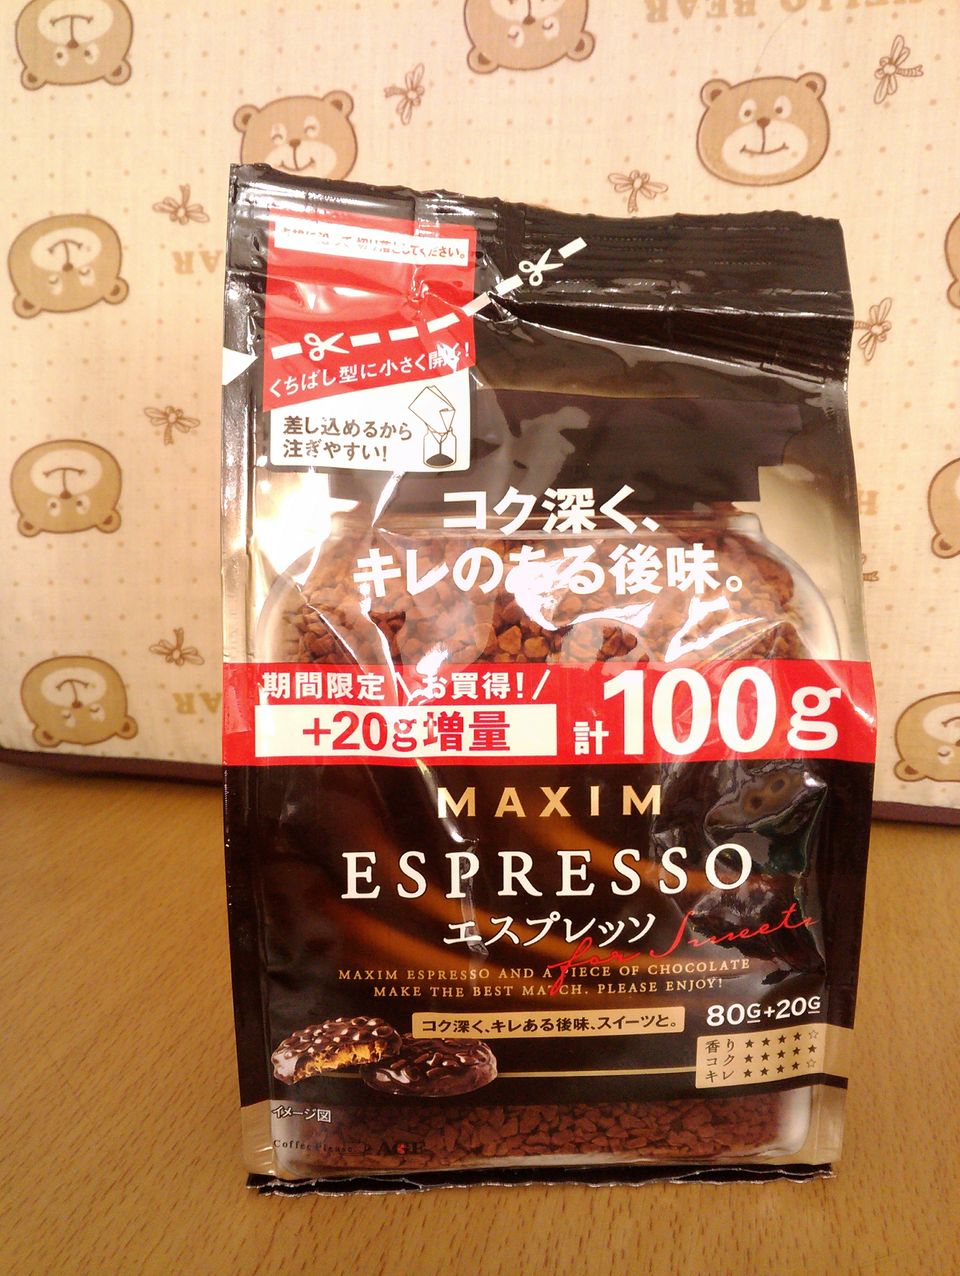 กาแฟ Maxim นำเข้าจากญี่ปุ่น รุ่นรีฟิล หลายรุ่น ถูกกว่าที่ญี่ปุ่น รูปที่ 1